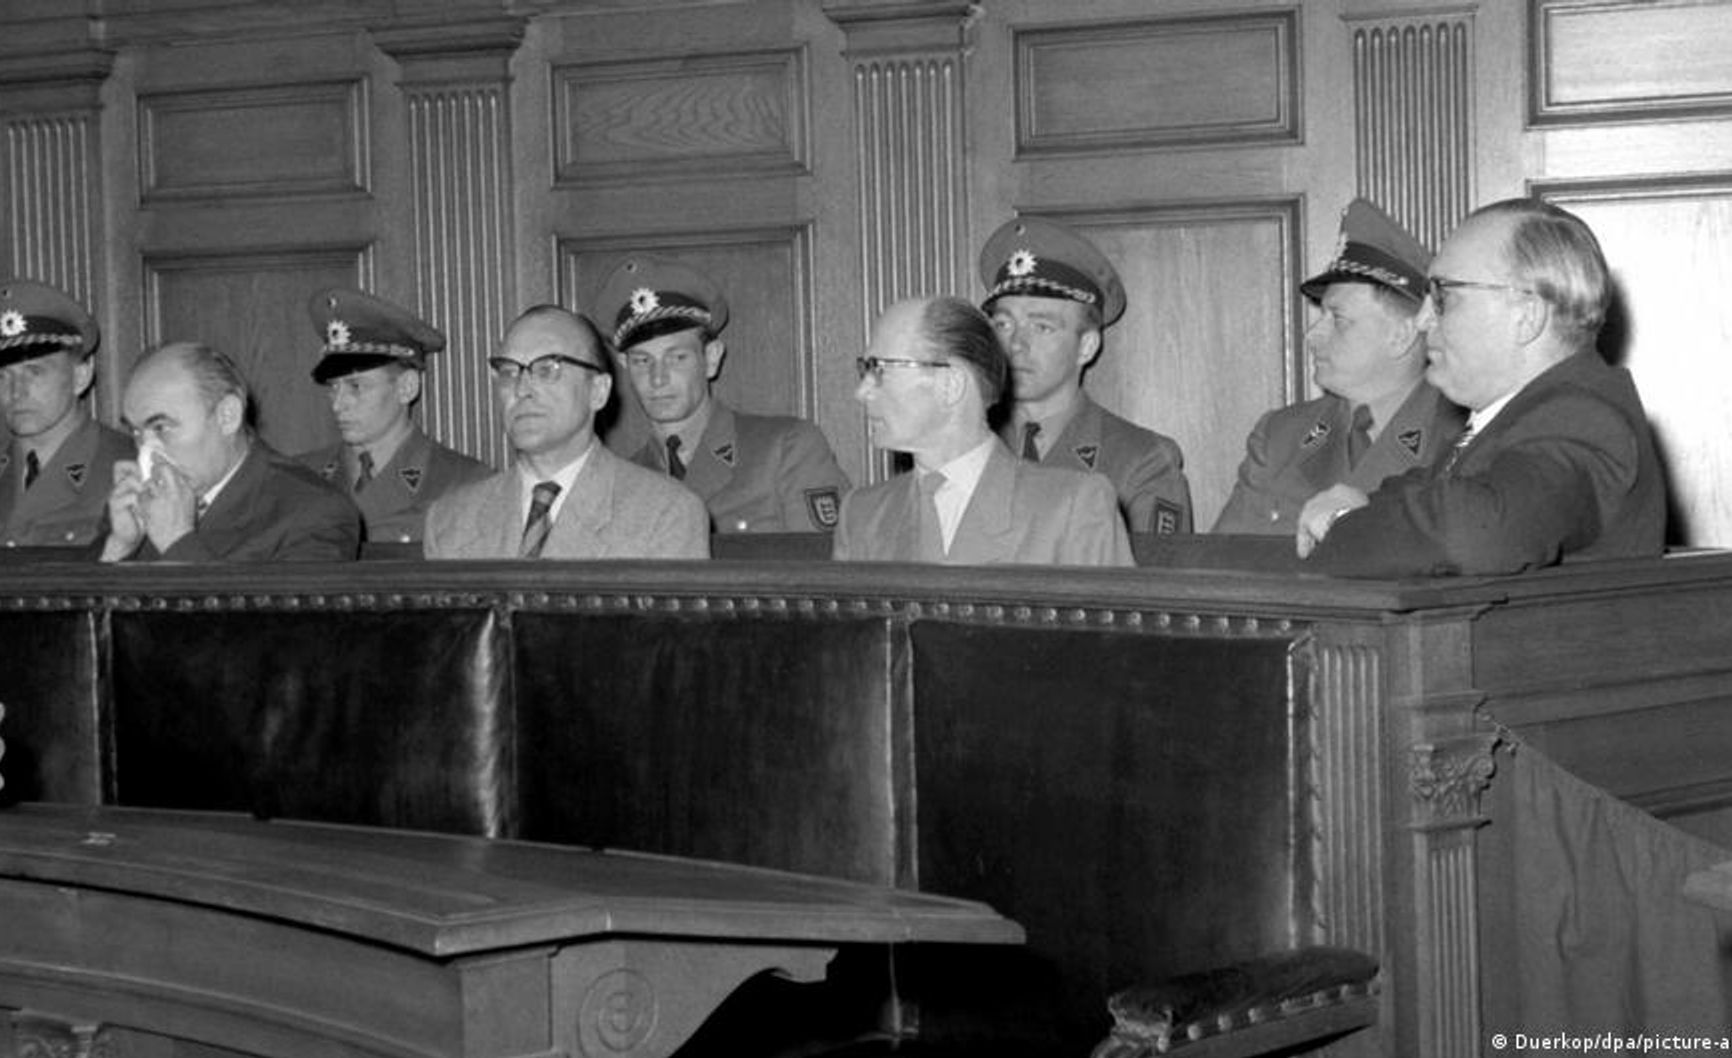 Ulm Einsatzkommando trial, 1958